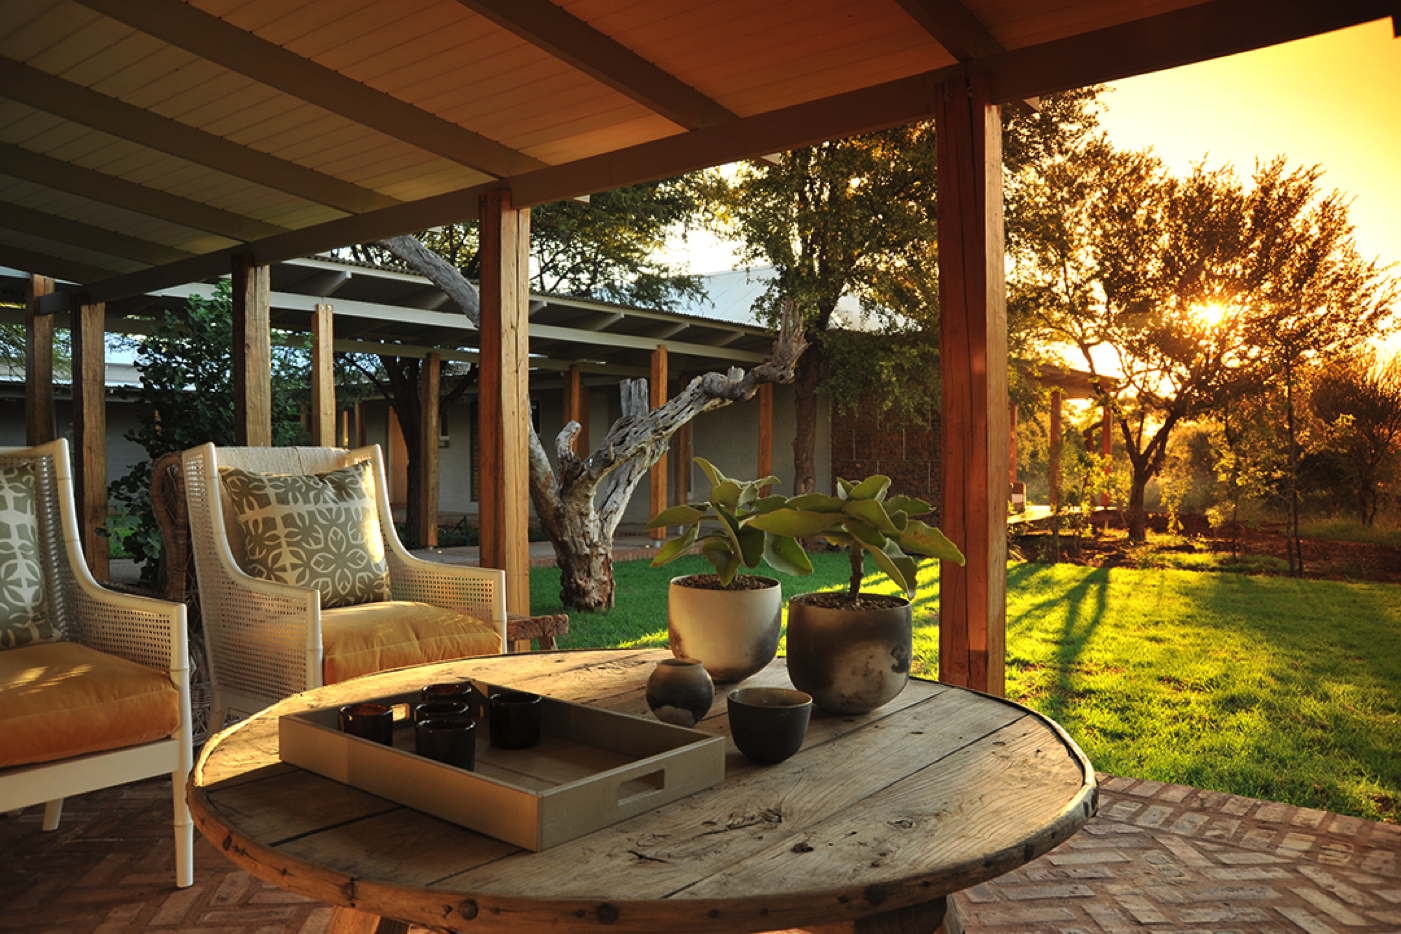 Luxusvilla-Ferienvilla-Villa in Südafrika-mieten-Madikwe Game Reserve-Safari